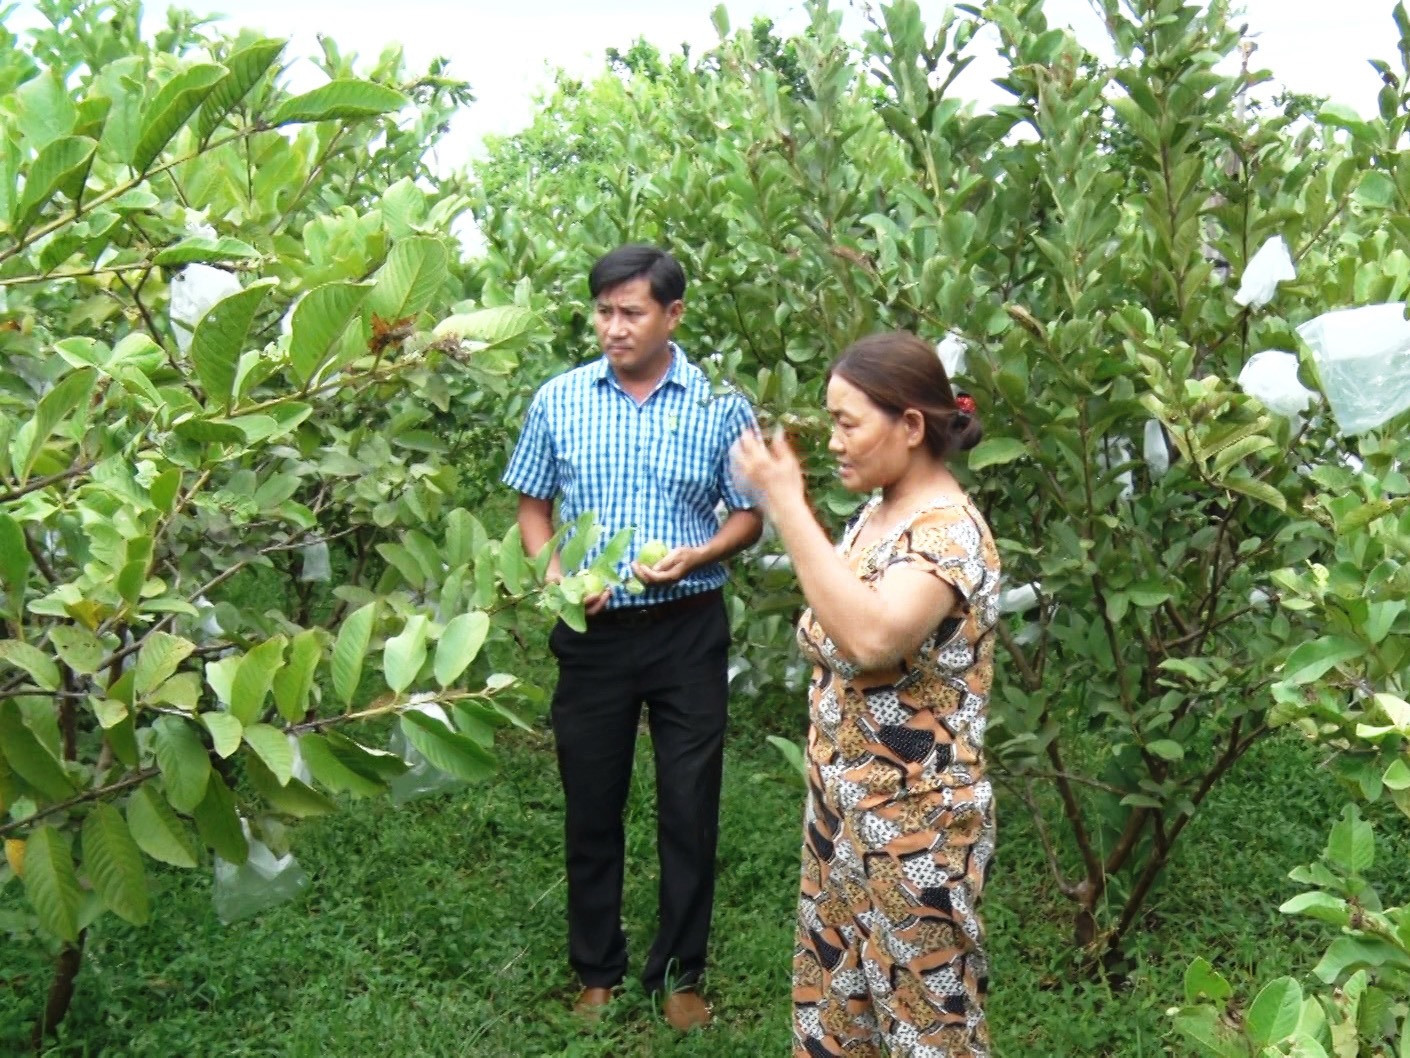 Trồng cây ăn quả gắn với phát triển du lịch đang là hướng đi mới của người dân thôn Thọ Tân, xã Tam Ngọc, TP.Tam Kỳ. Ảnh: T.S